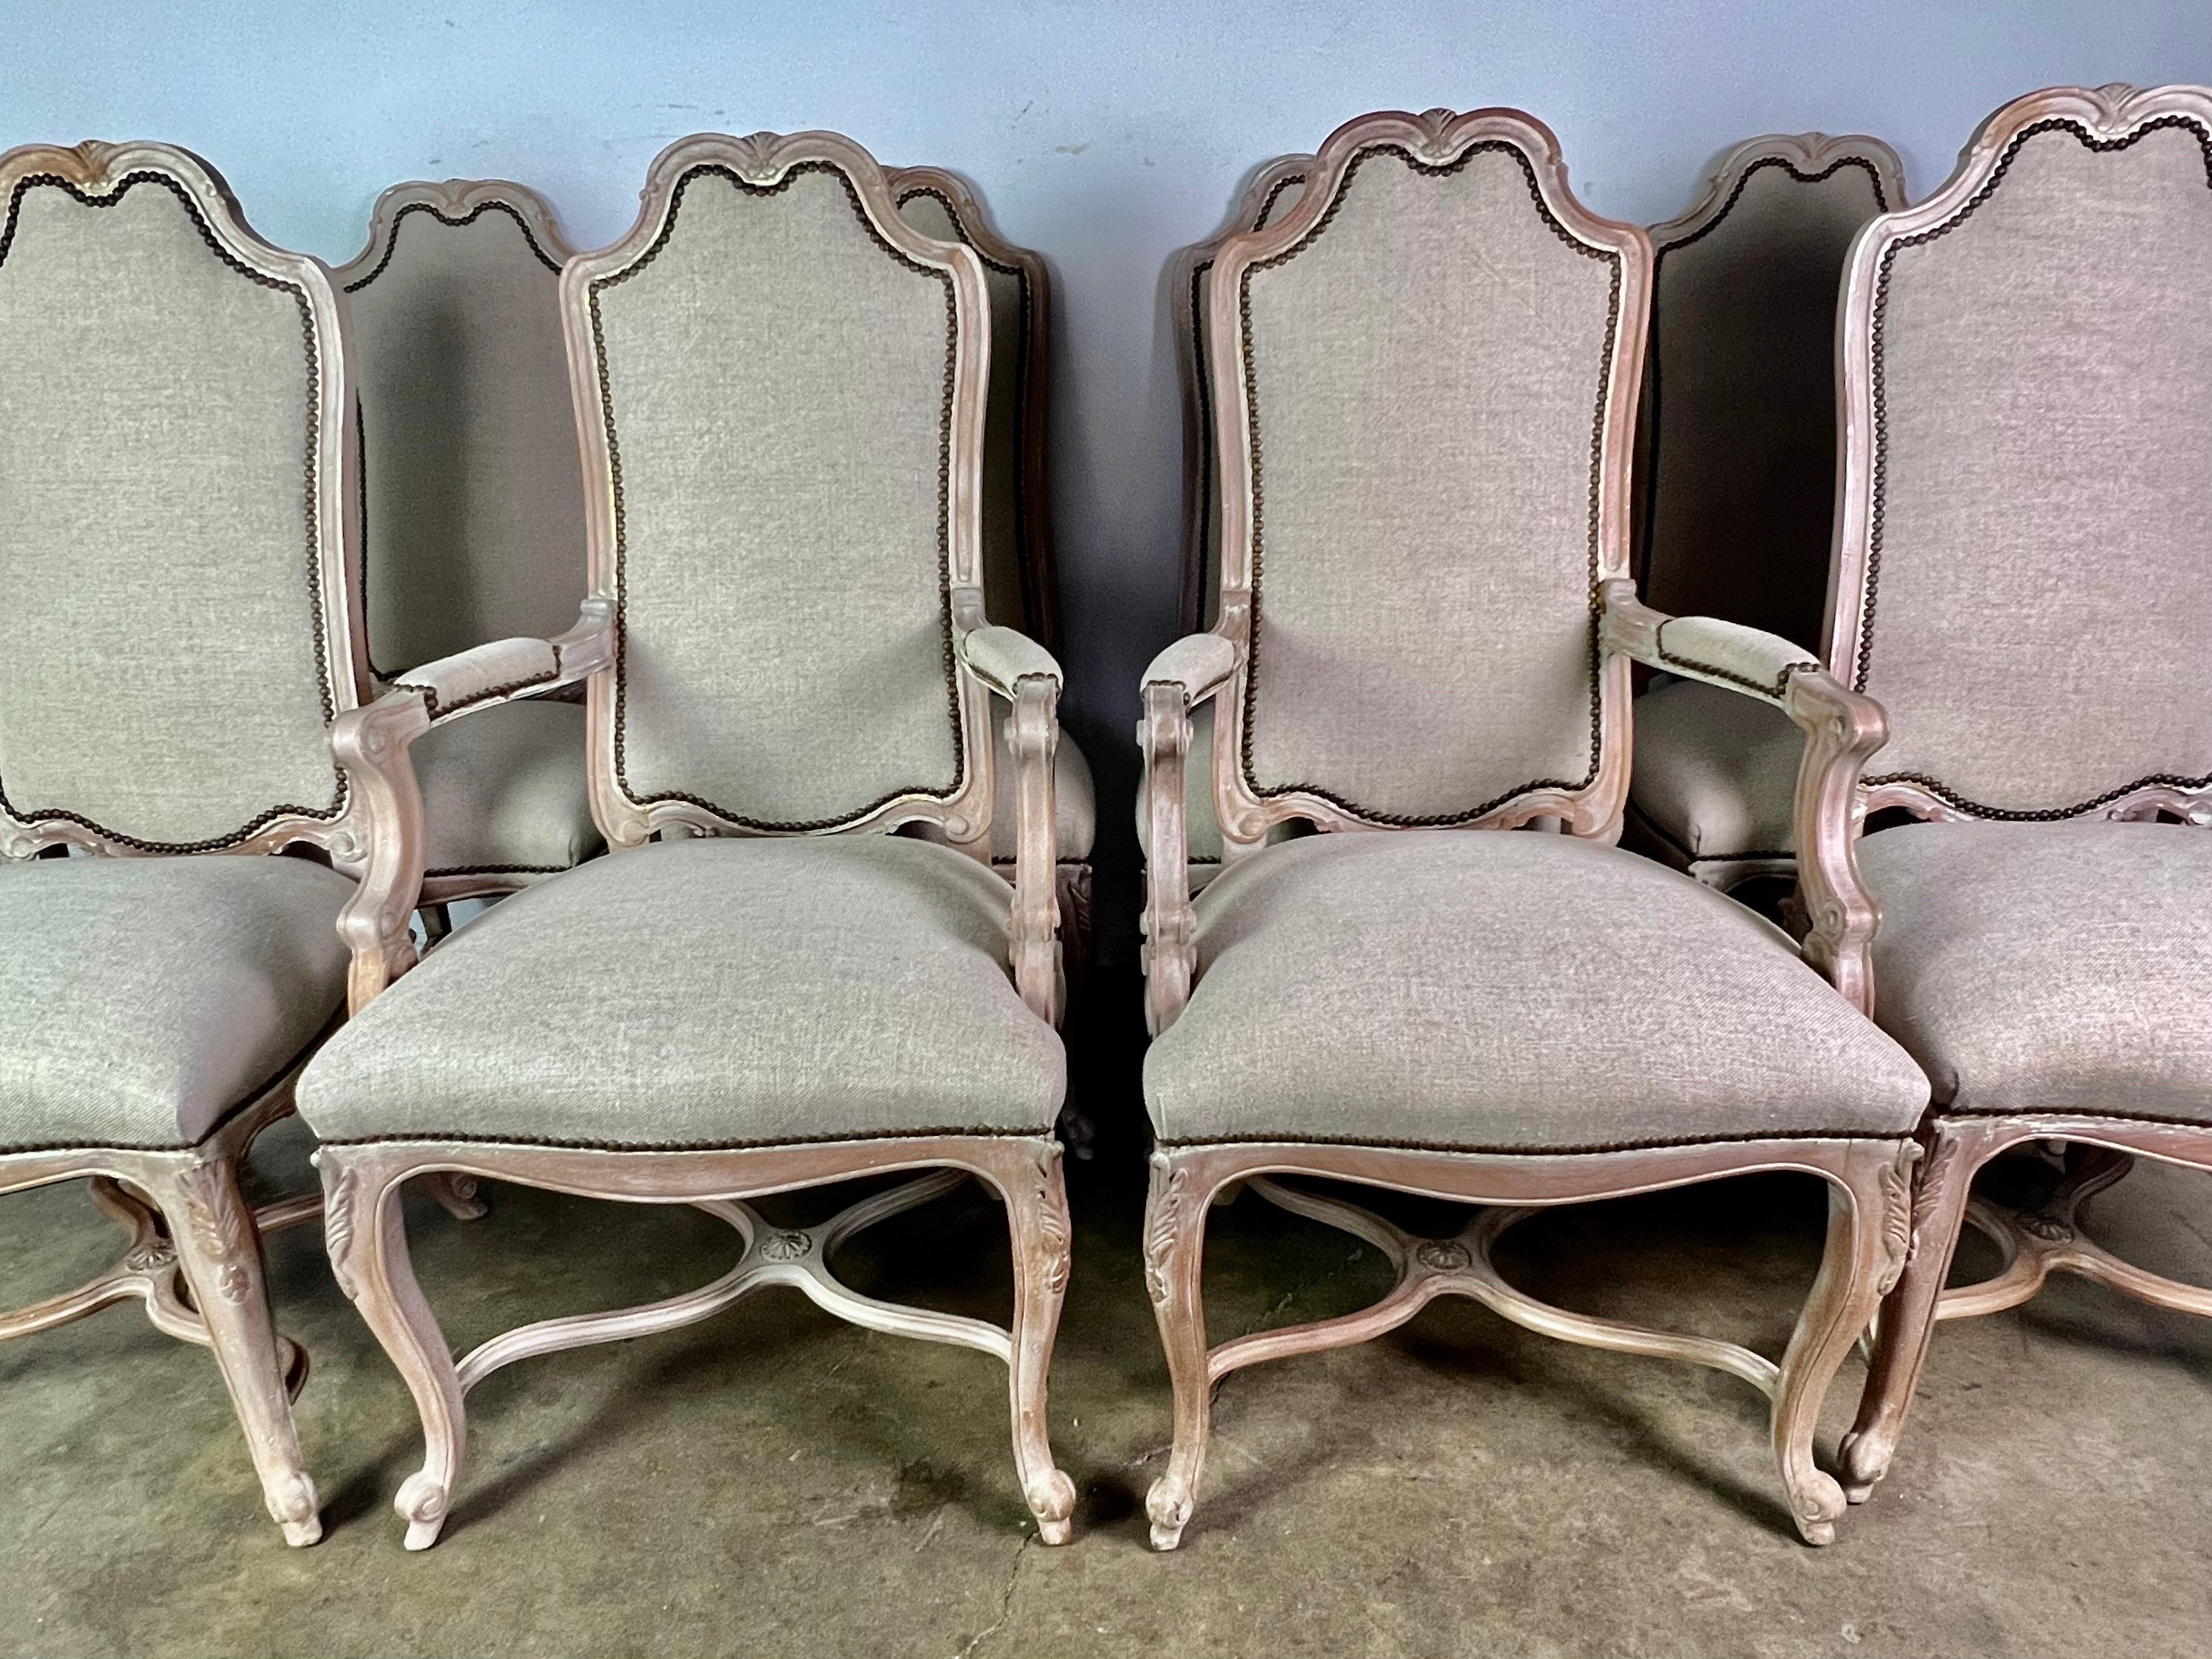 Ensemble de (8) chaises de salle à manger françaises de style Louis XV en bois de noyer blanchi. Les chaises sont nouvellement tapissées dans un lin belge délavé avec une garniture à tête de clou. Les chaises reposent sur quatre pieds cabriole avec